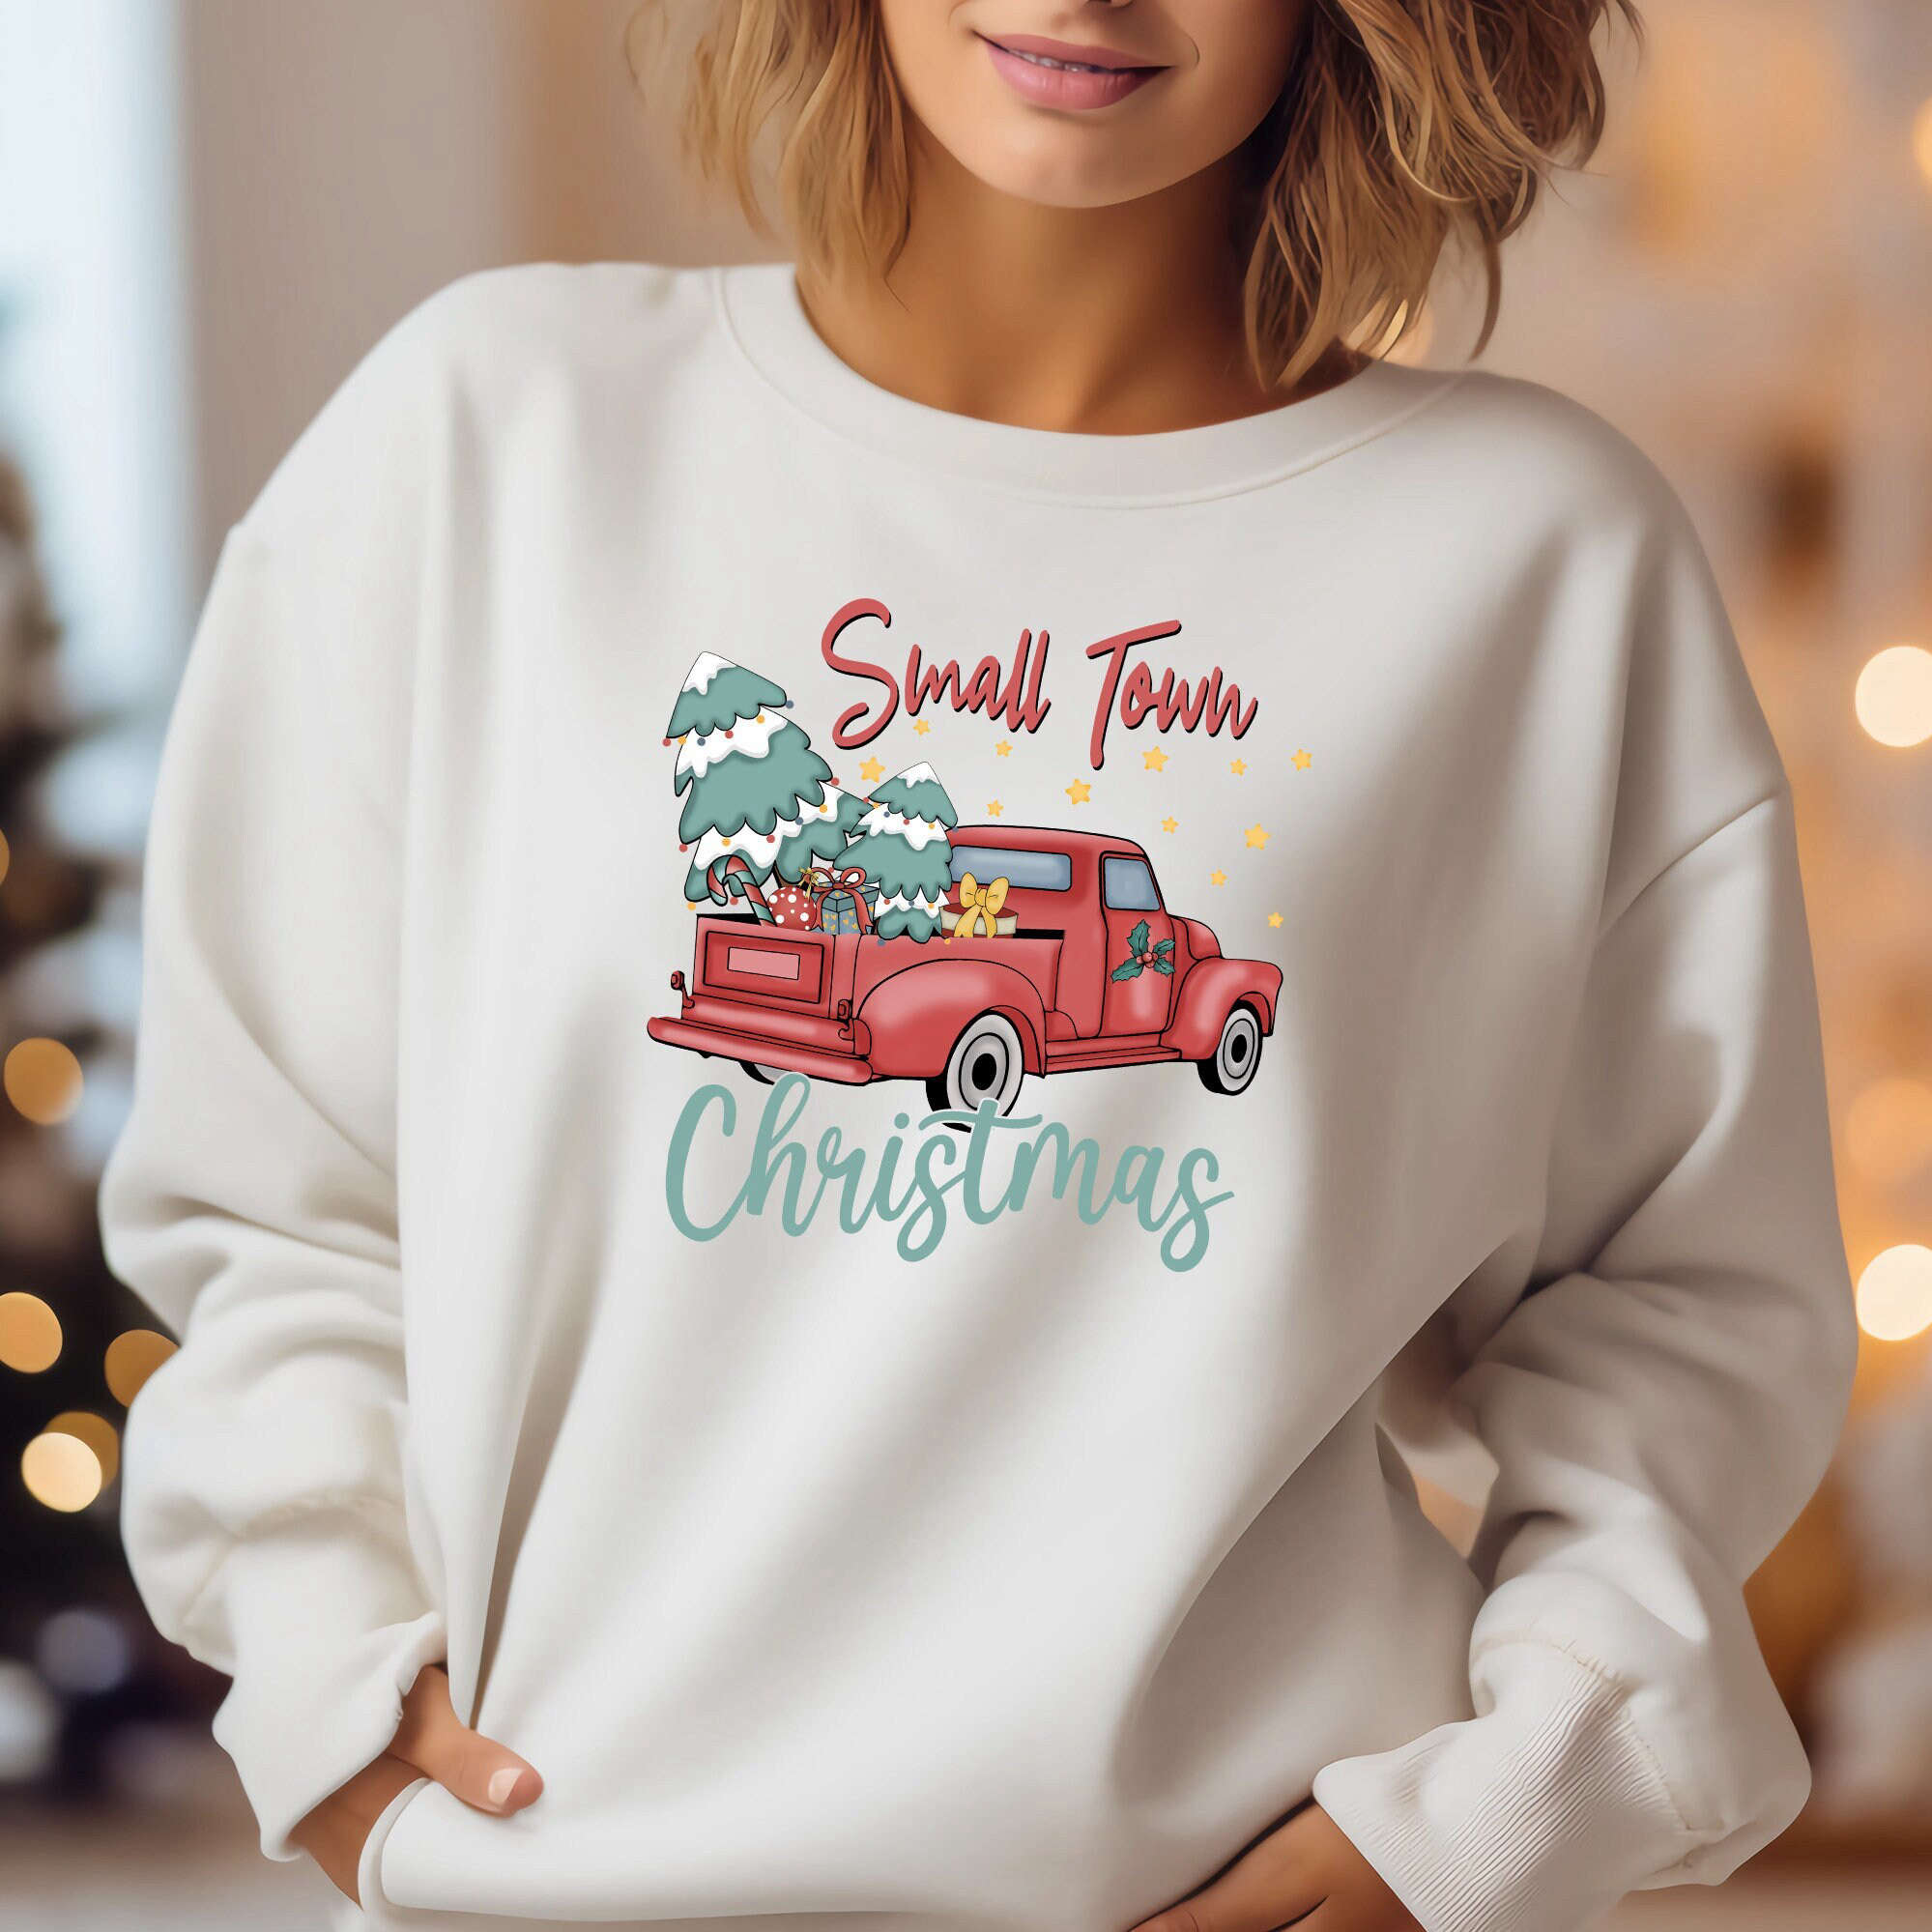 Retro Christmas Shirt, Christmas Sweatshirt, Womens Christmas Shirt, Christmas Gift, Christmas Sweater, Holiday Vintage Sw eatshirt